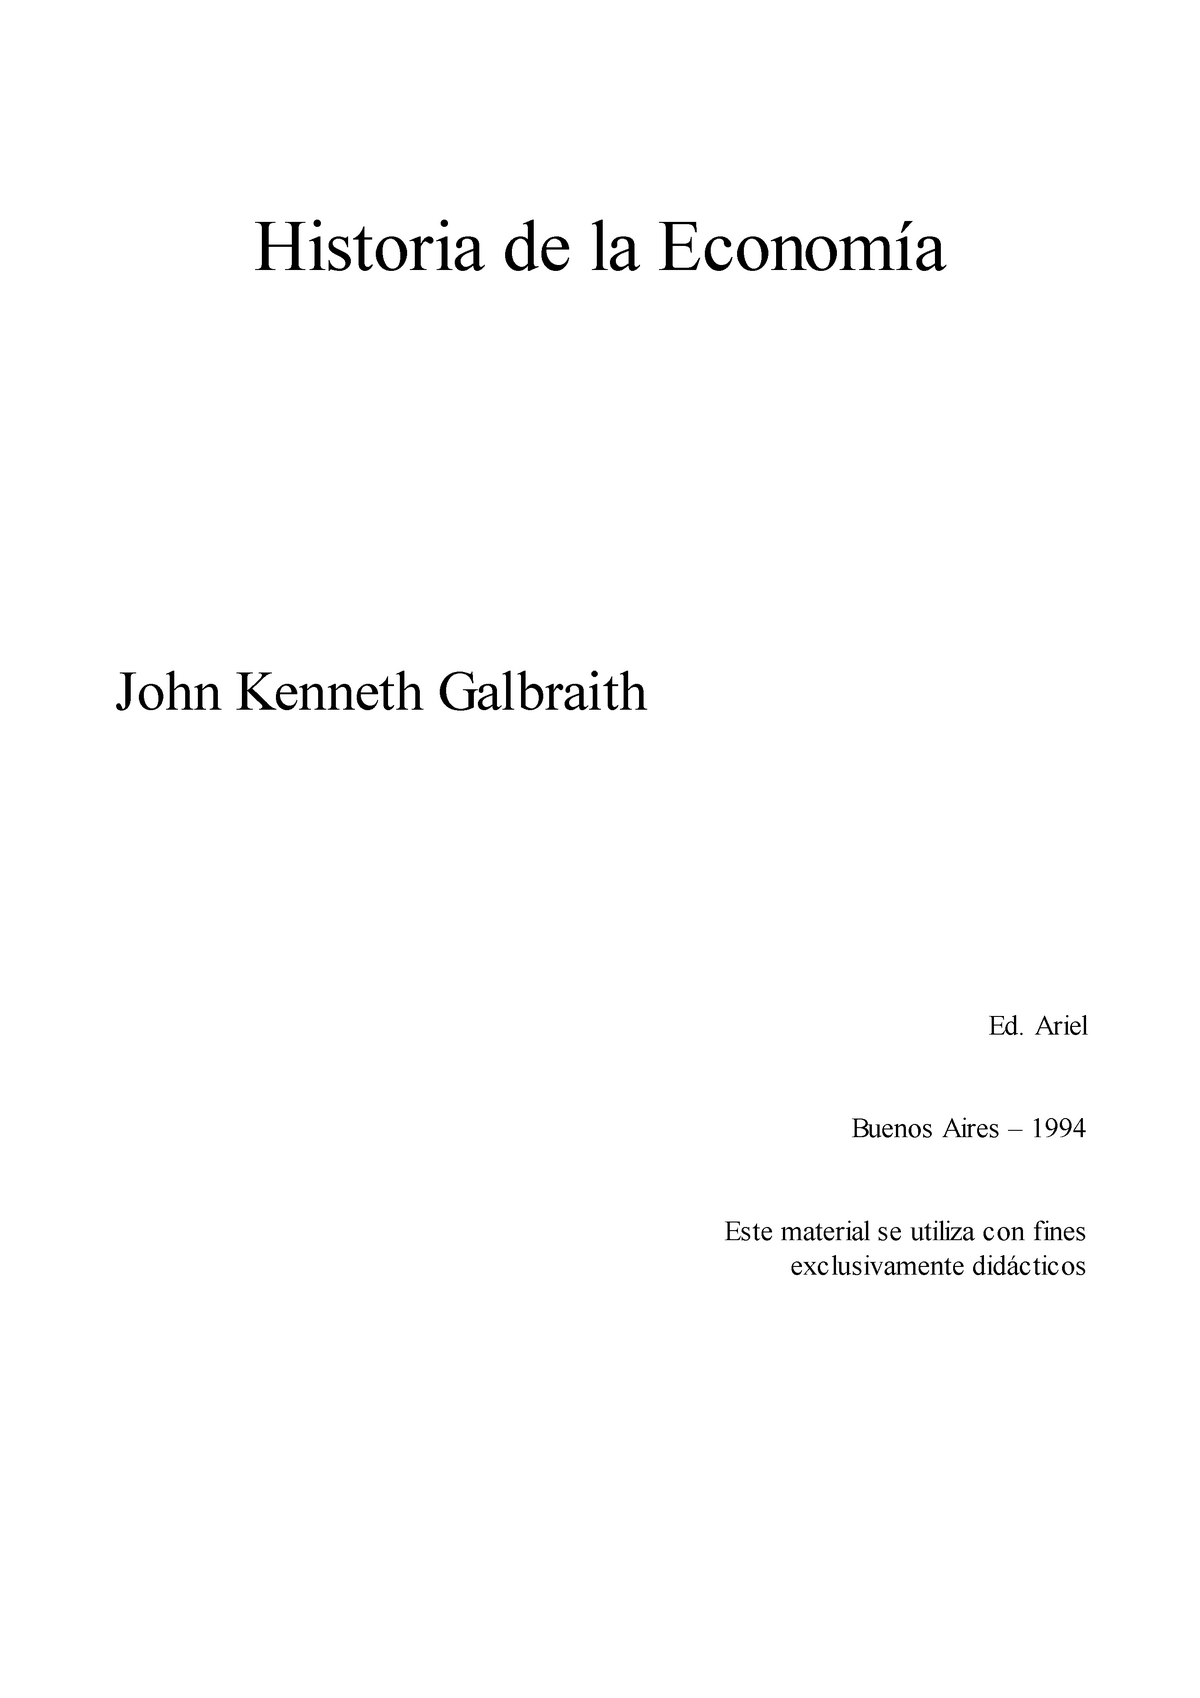 Historia De La Economia Studocu